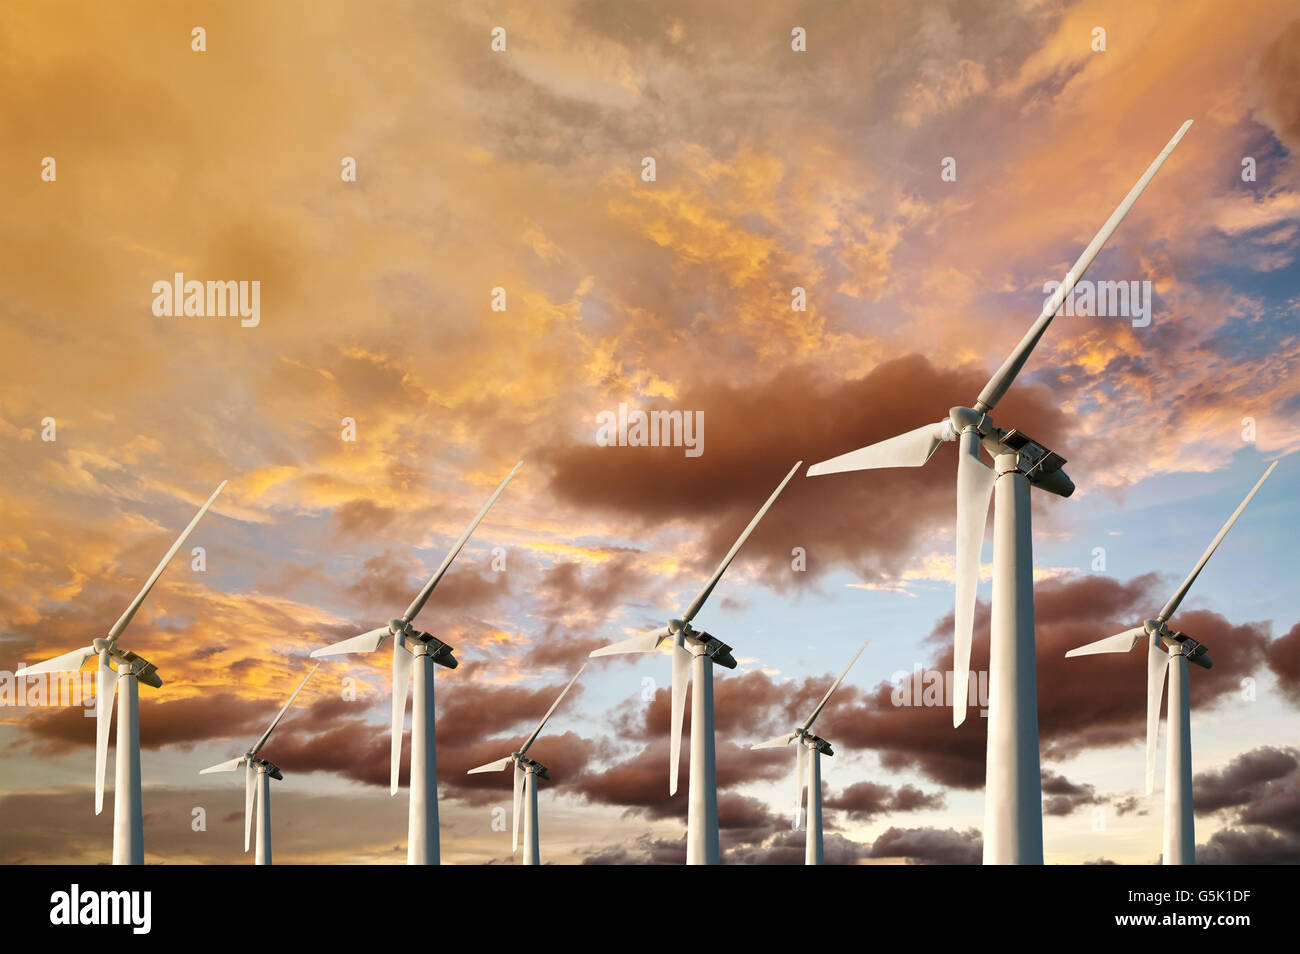 L'énergie du vent souffle dans avenir Amarillo et éoliens sur fond bleu Coucher Soleil au crépuscule Banque D'Images